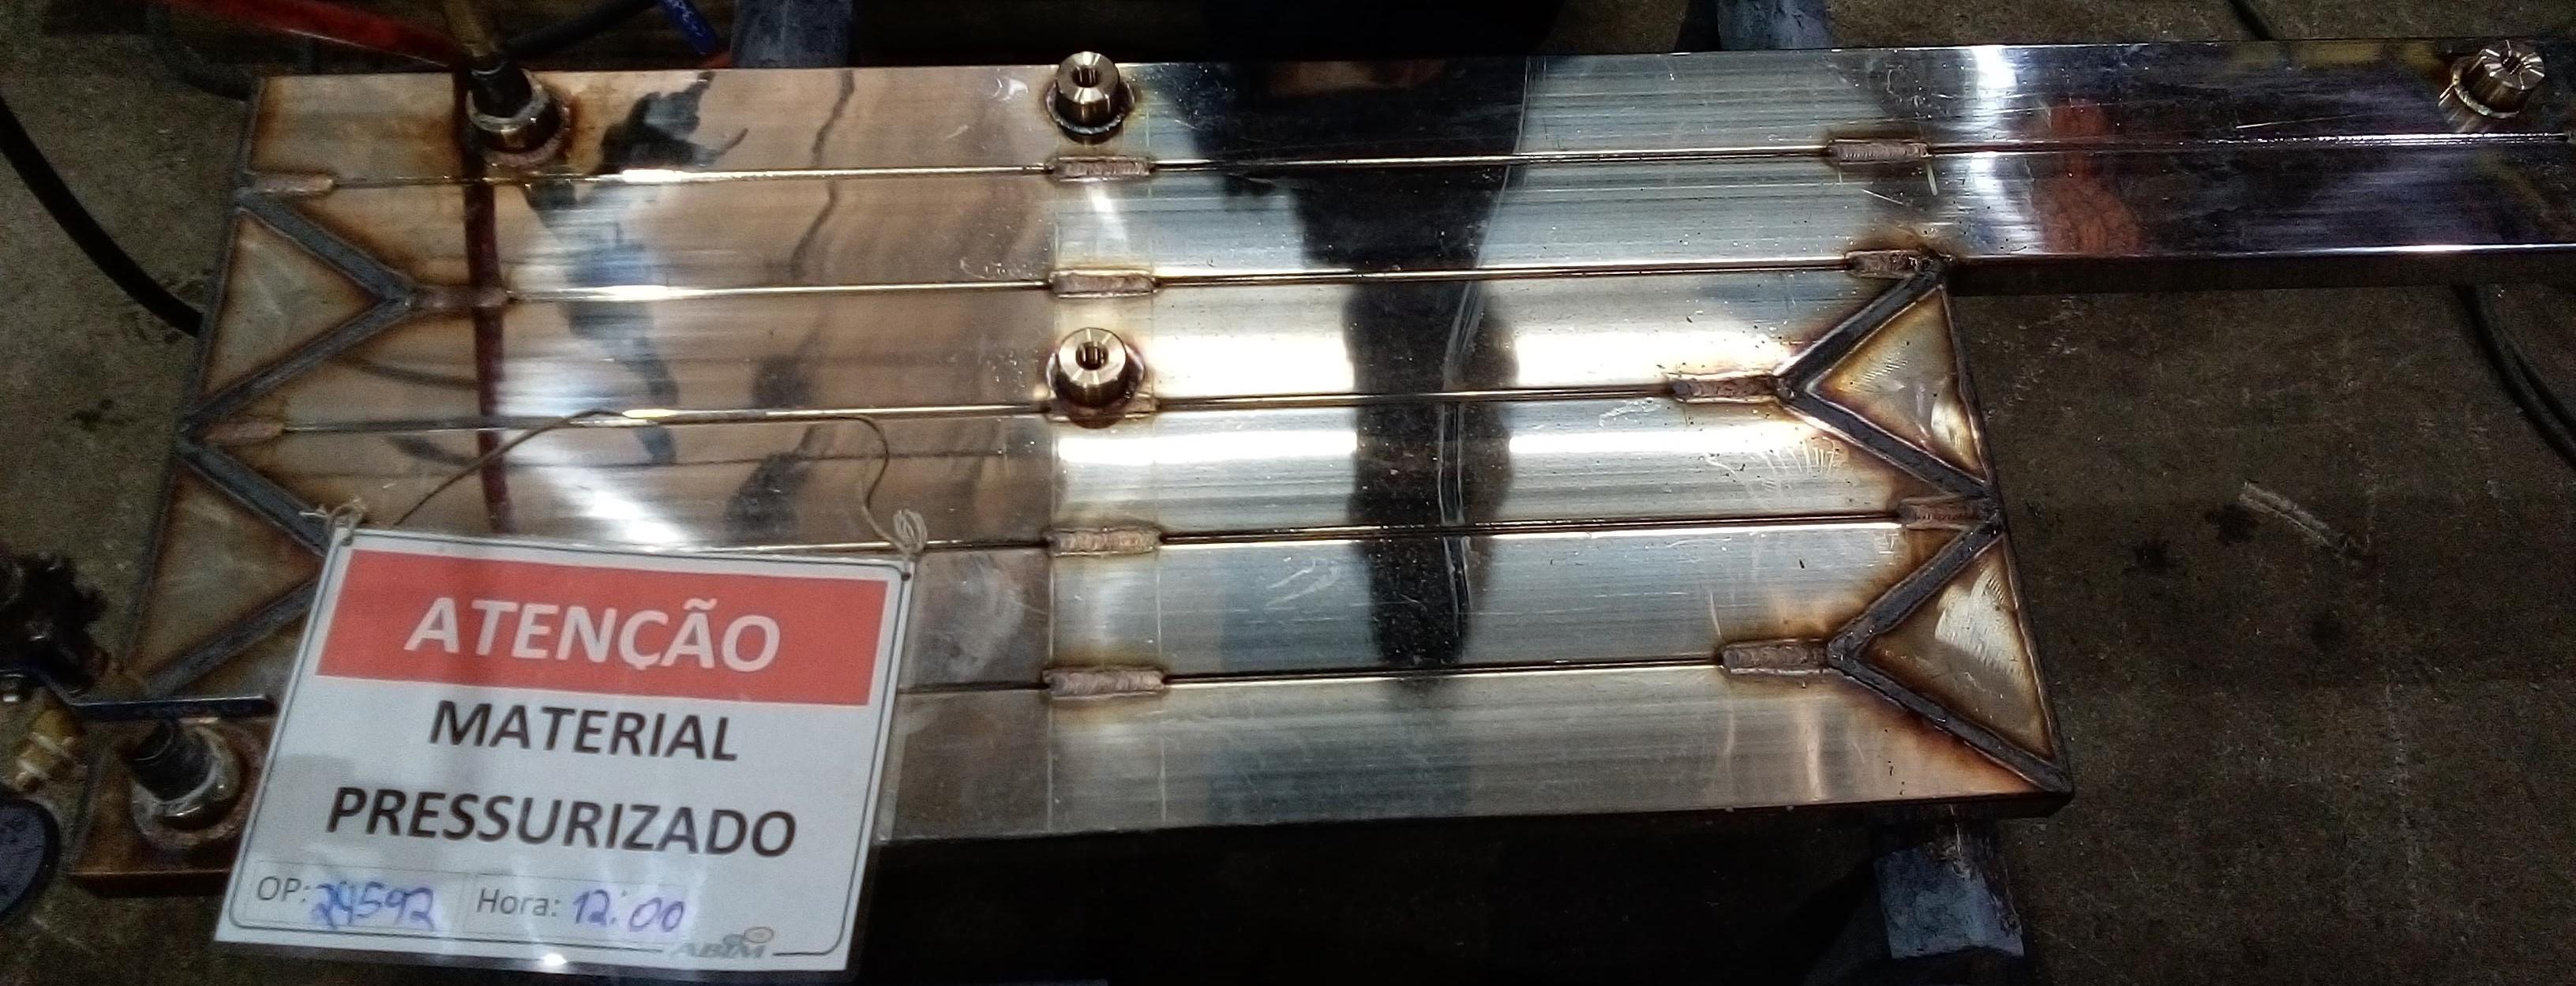 Panel frigorífico de tubo cuadrado de acero inoxidable